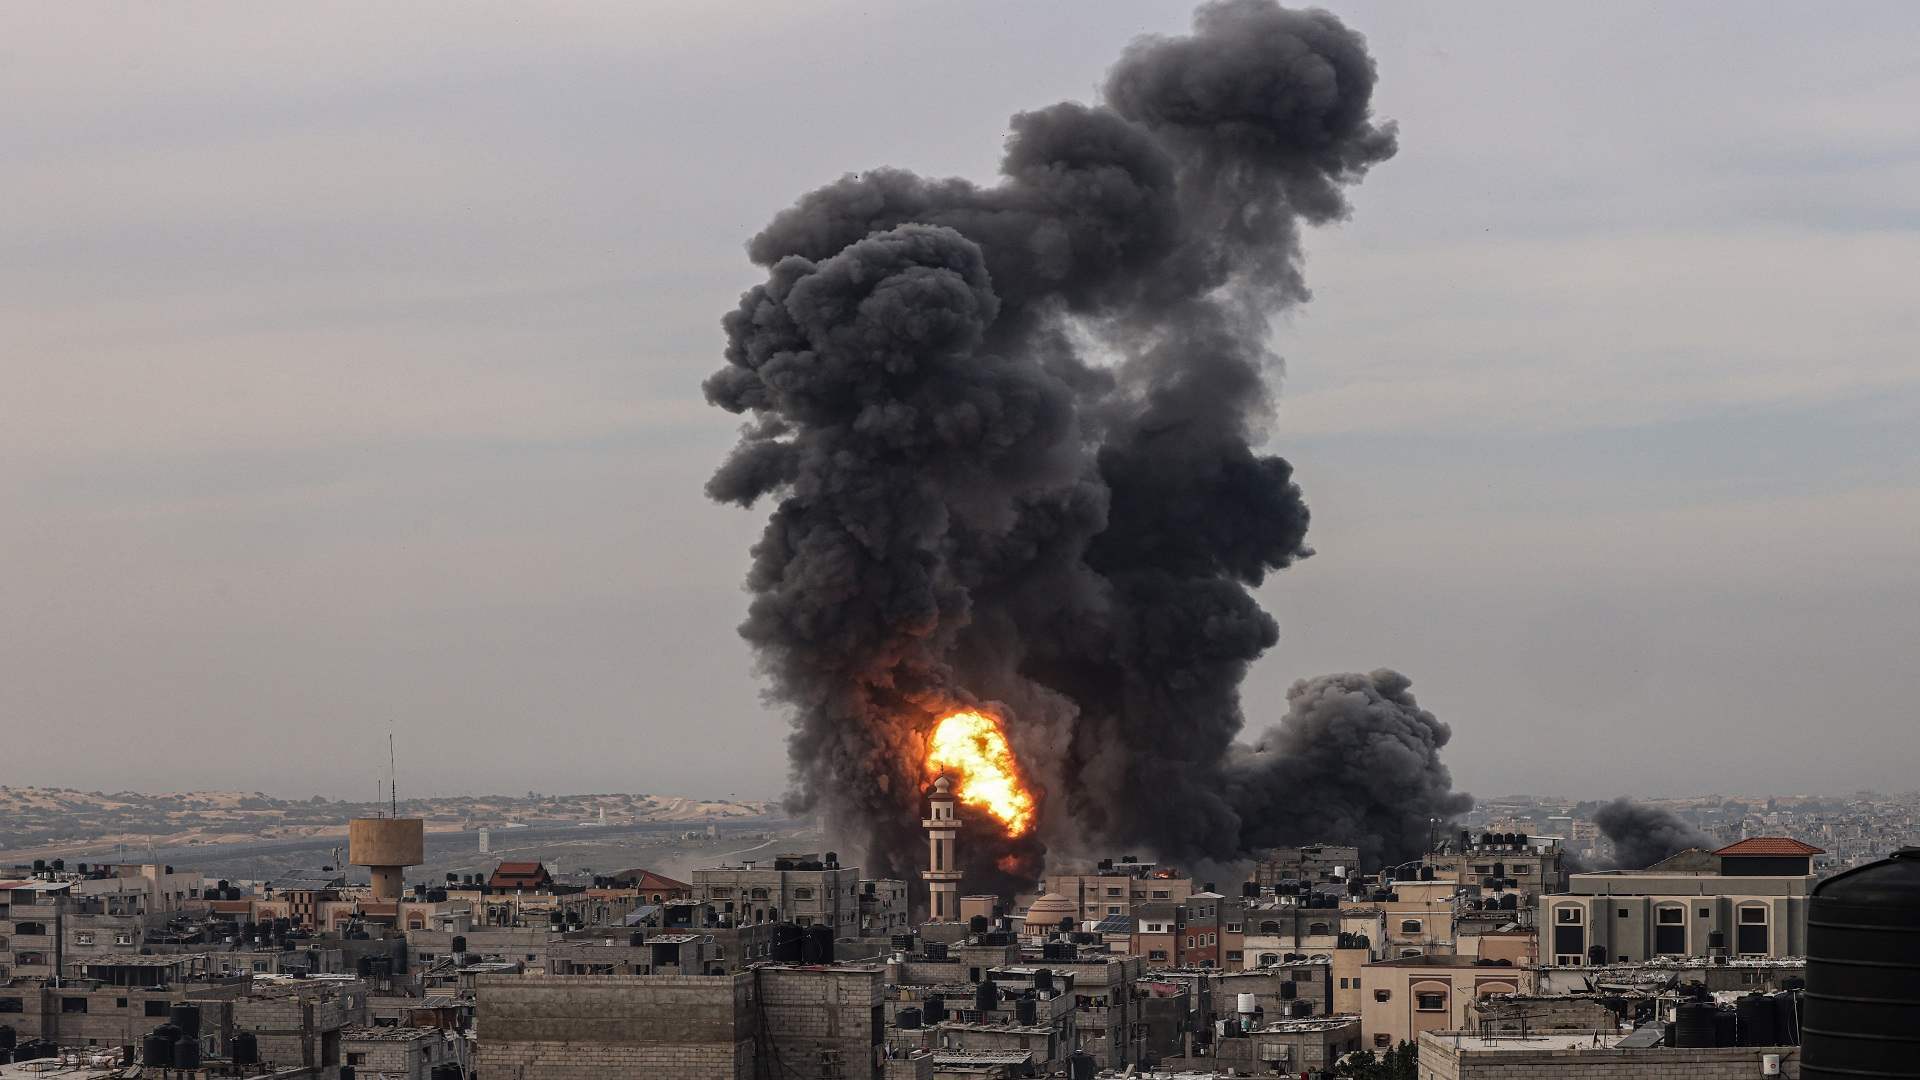 ارتفاع حصيلة الشهداء في العمليات الإسرائيلية في قطاع غزة إلى 20424 